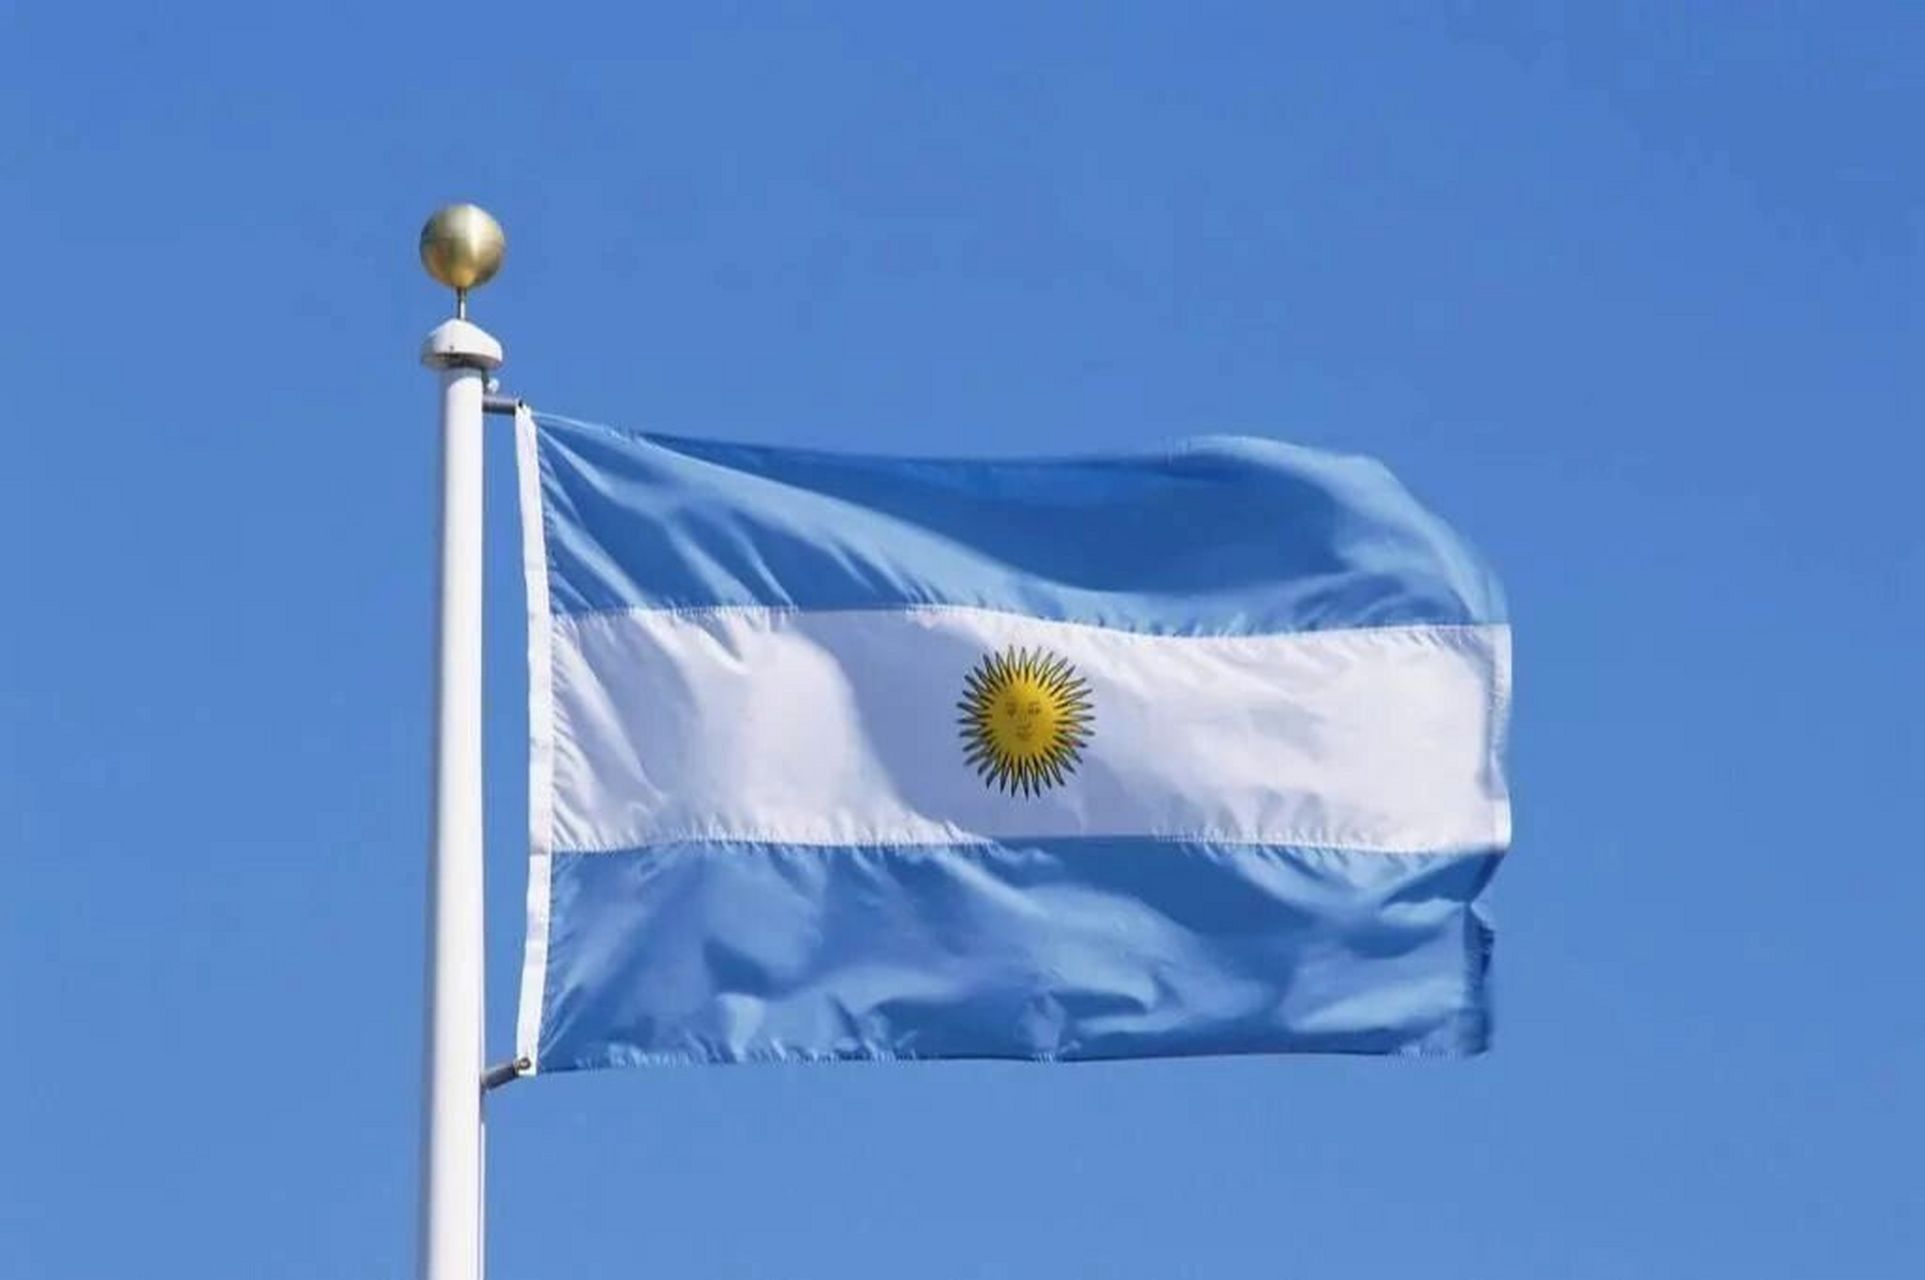 国旗:阿根廷 中文名:阿根廷共和国 外文名:the republic of argentina